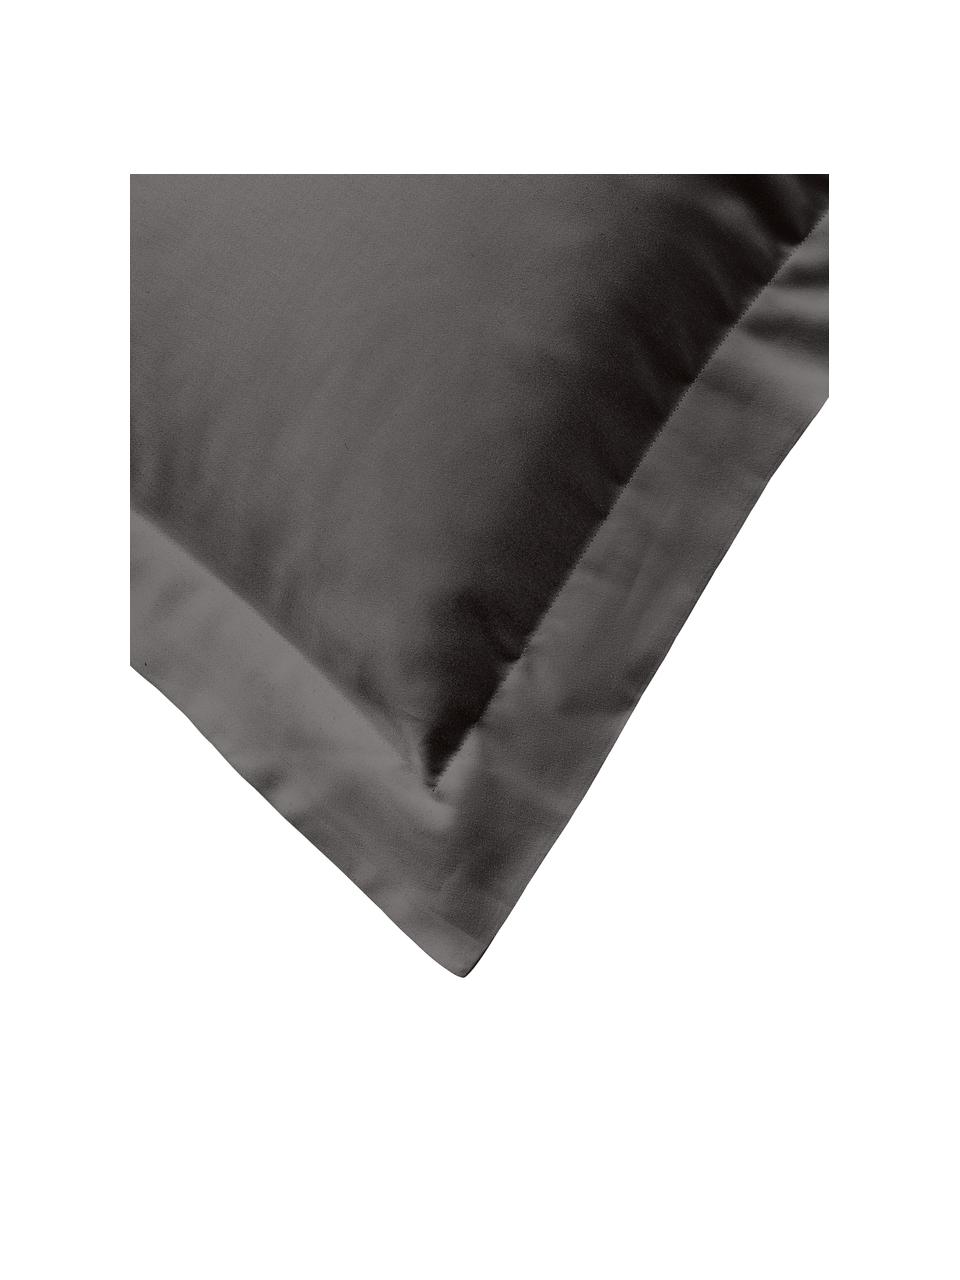 Poszewka na poduszkę z satyny bawełnianej Premium, Szary, S 40 x D 80 cm